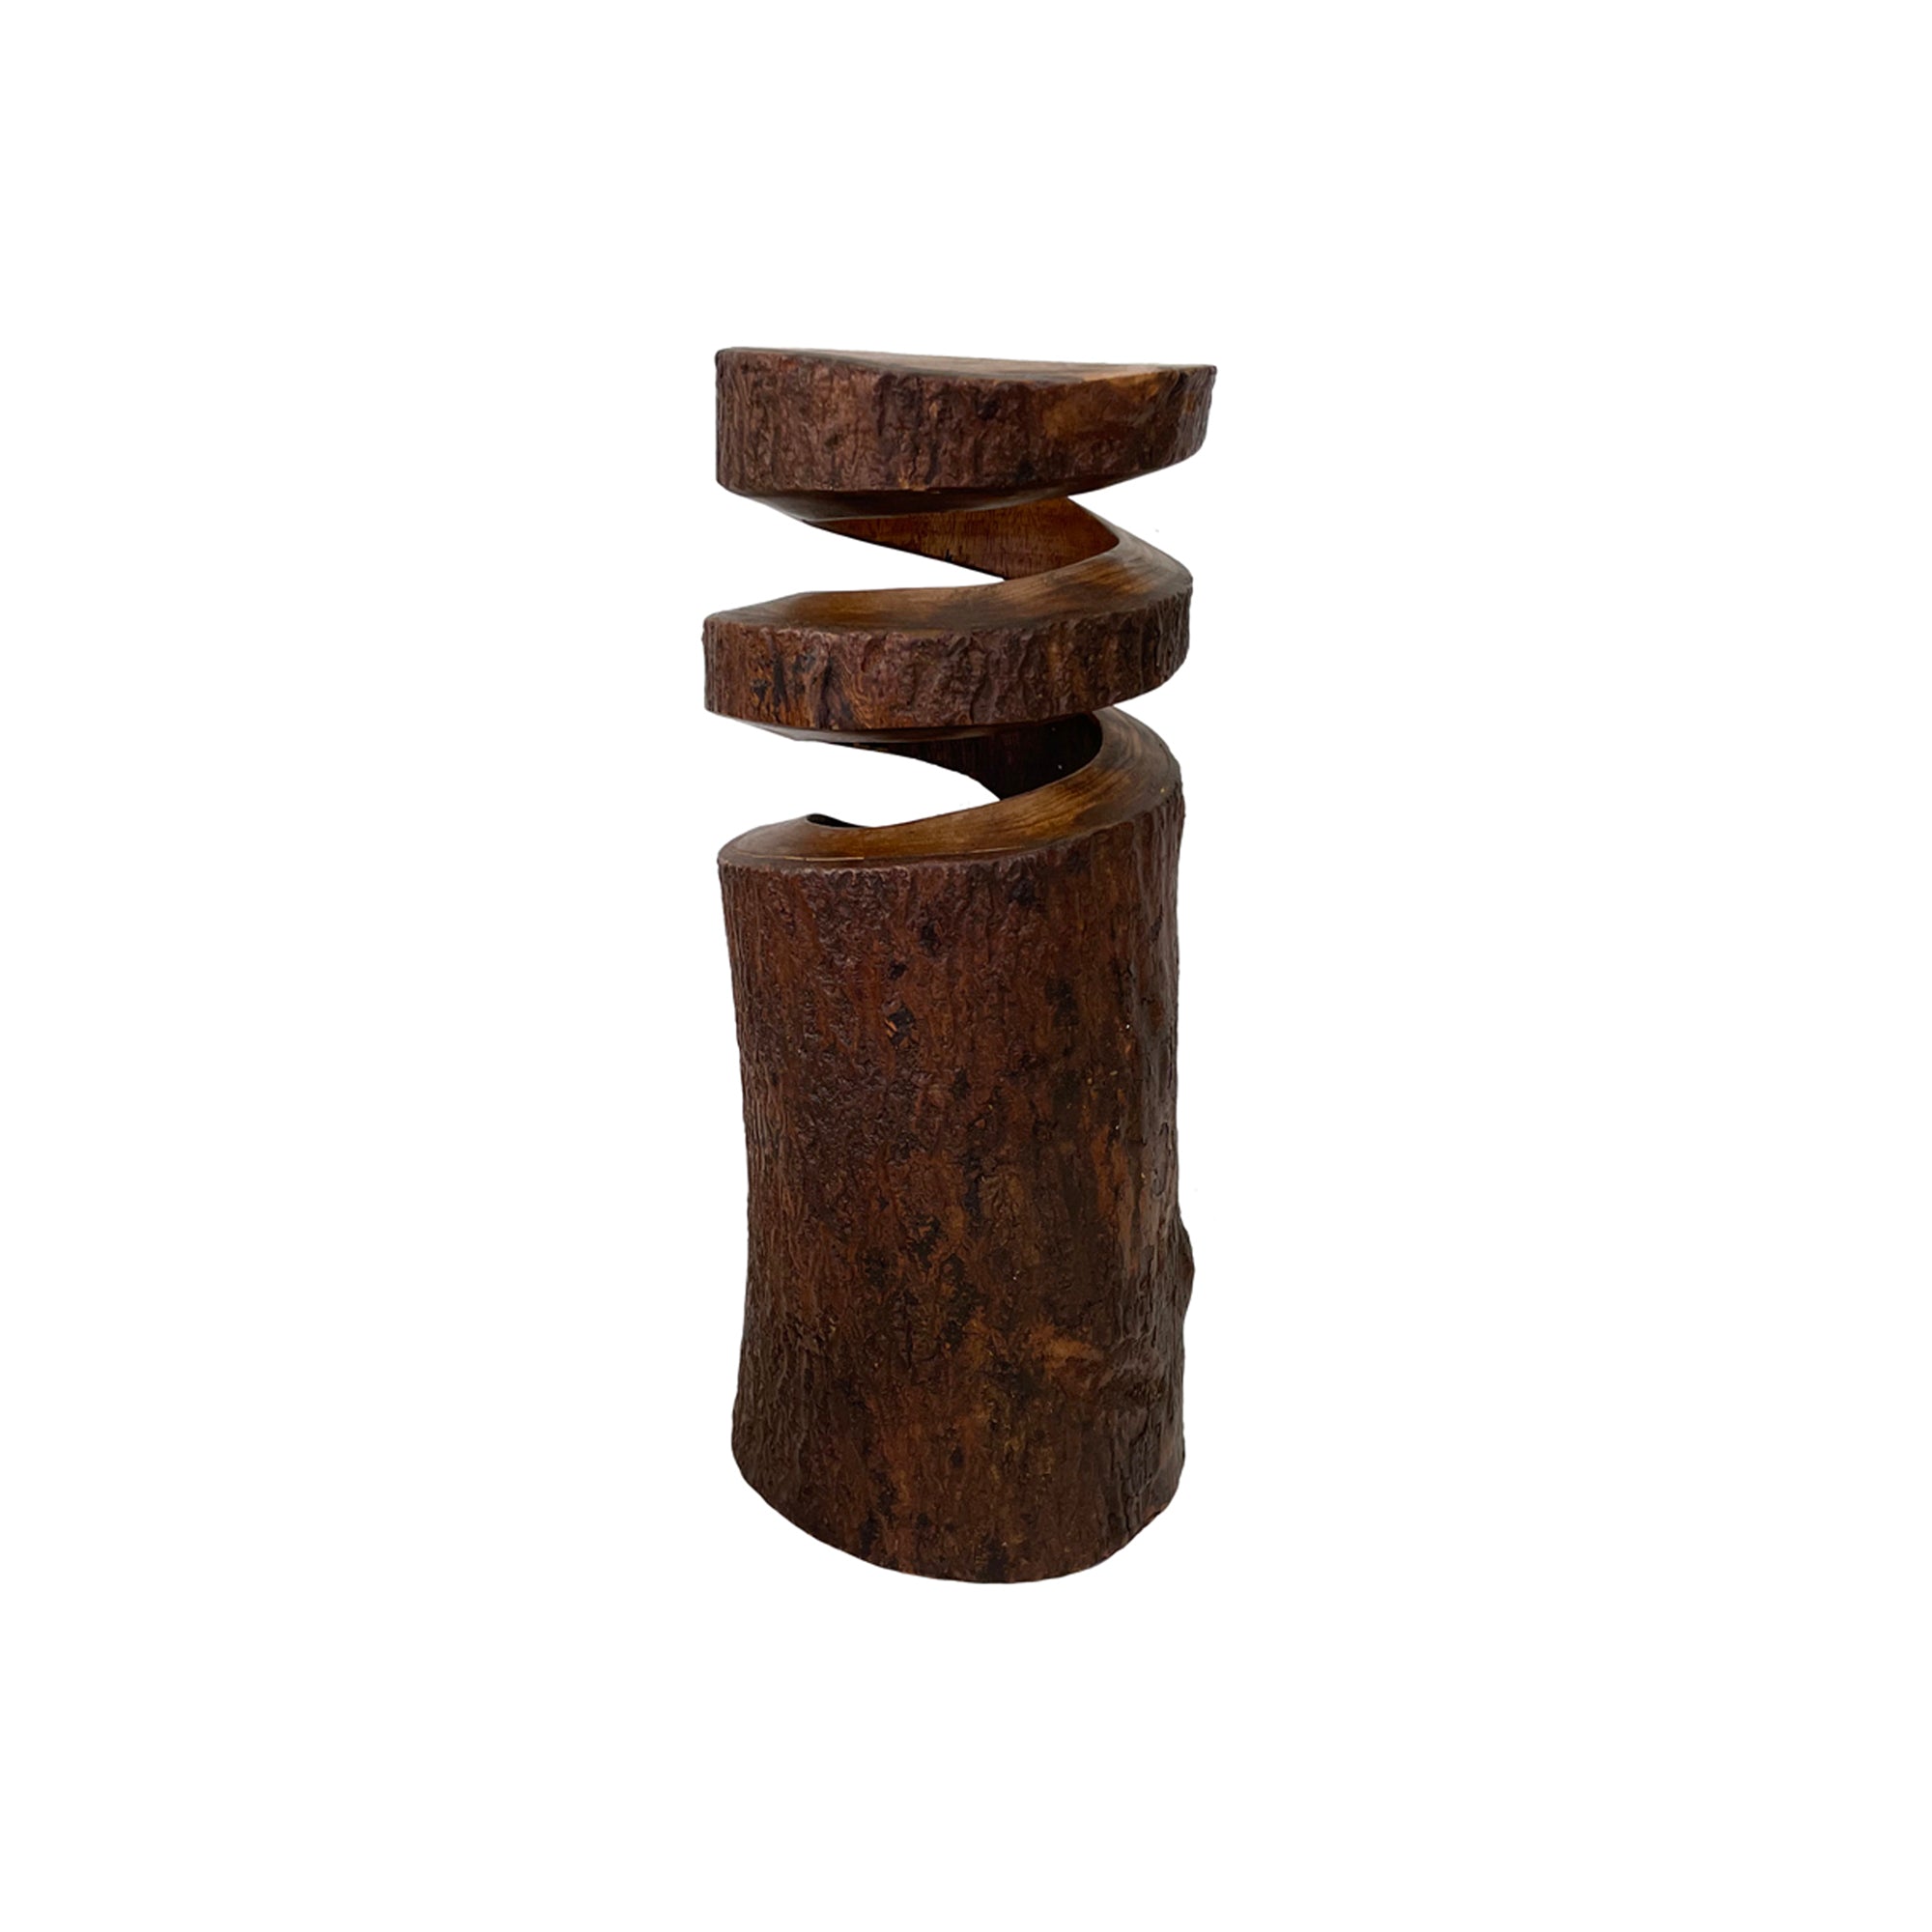 Spiraling Cut Cork Wood Vase